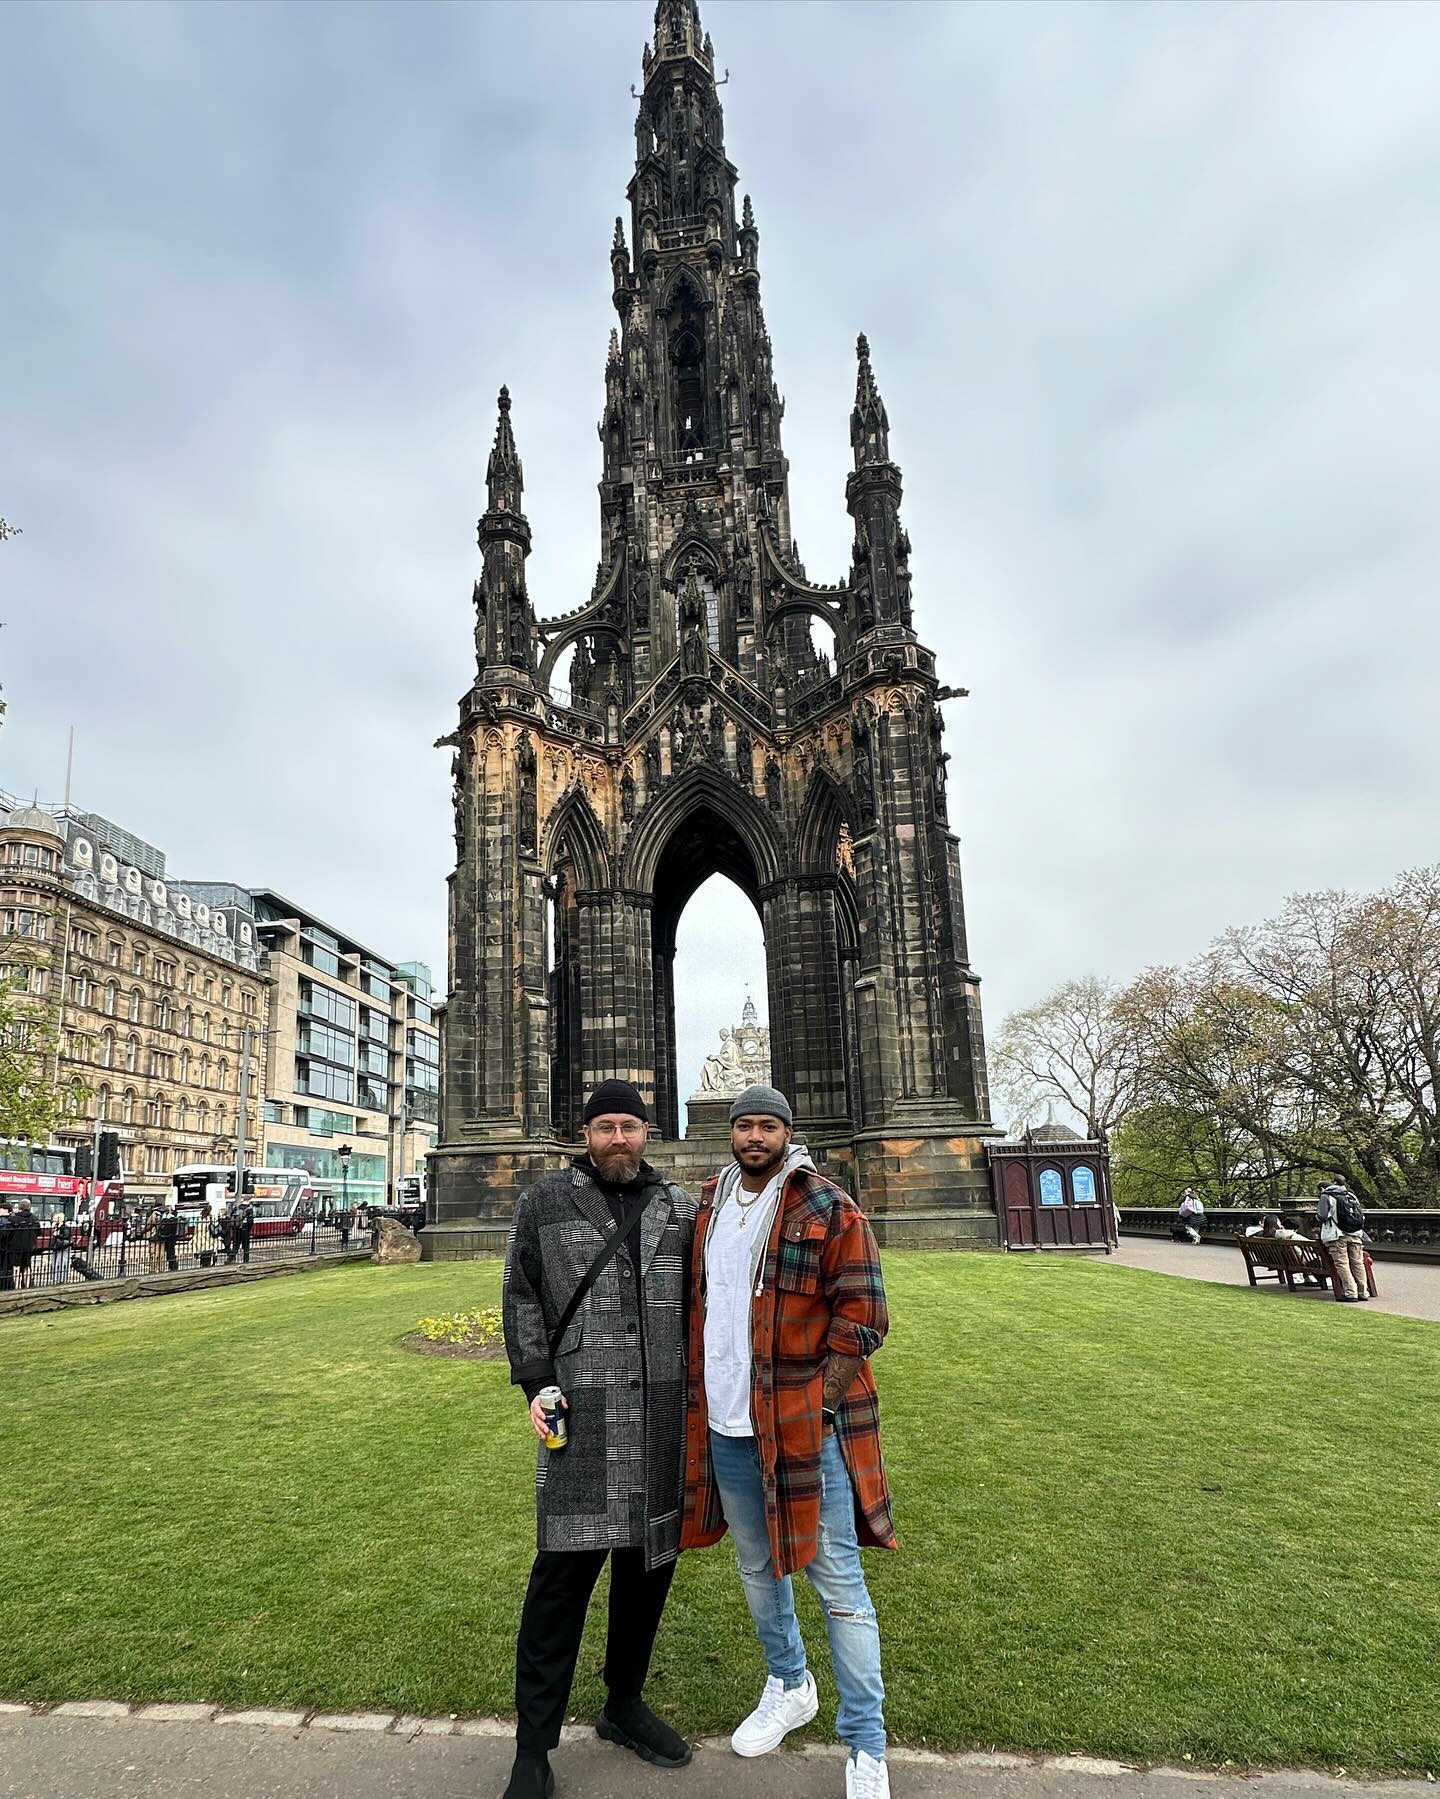 Edinburgh photo dump 🏴󠁧󠁢󠁳󠁣󠁴󠁿

•
•
•
#travel #scotland #edinburgh #fashion #mensfashion #lafashion #models #lamodels #modeling #personaltrainer #fitness #lifestyle #mindset #consistency #positivity #positivevibes #morelife